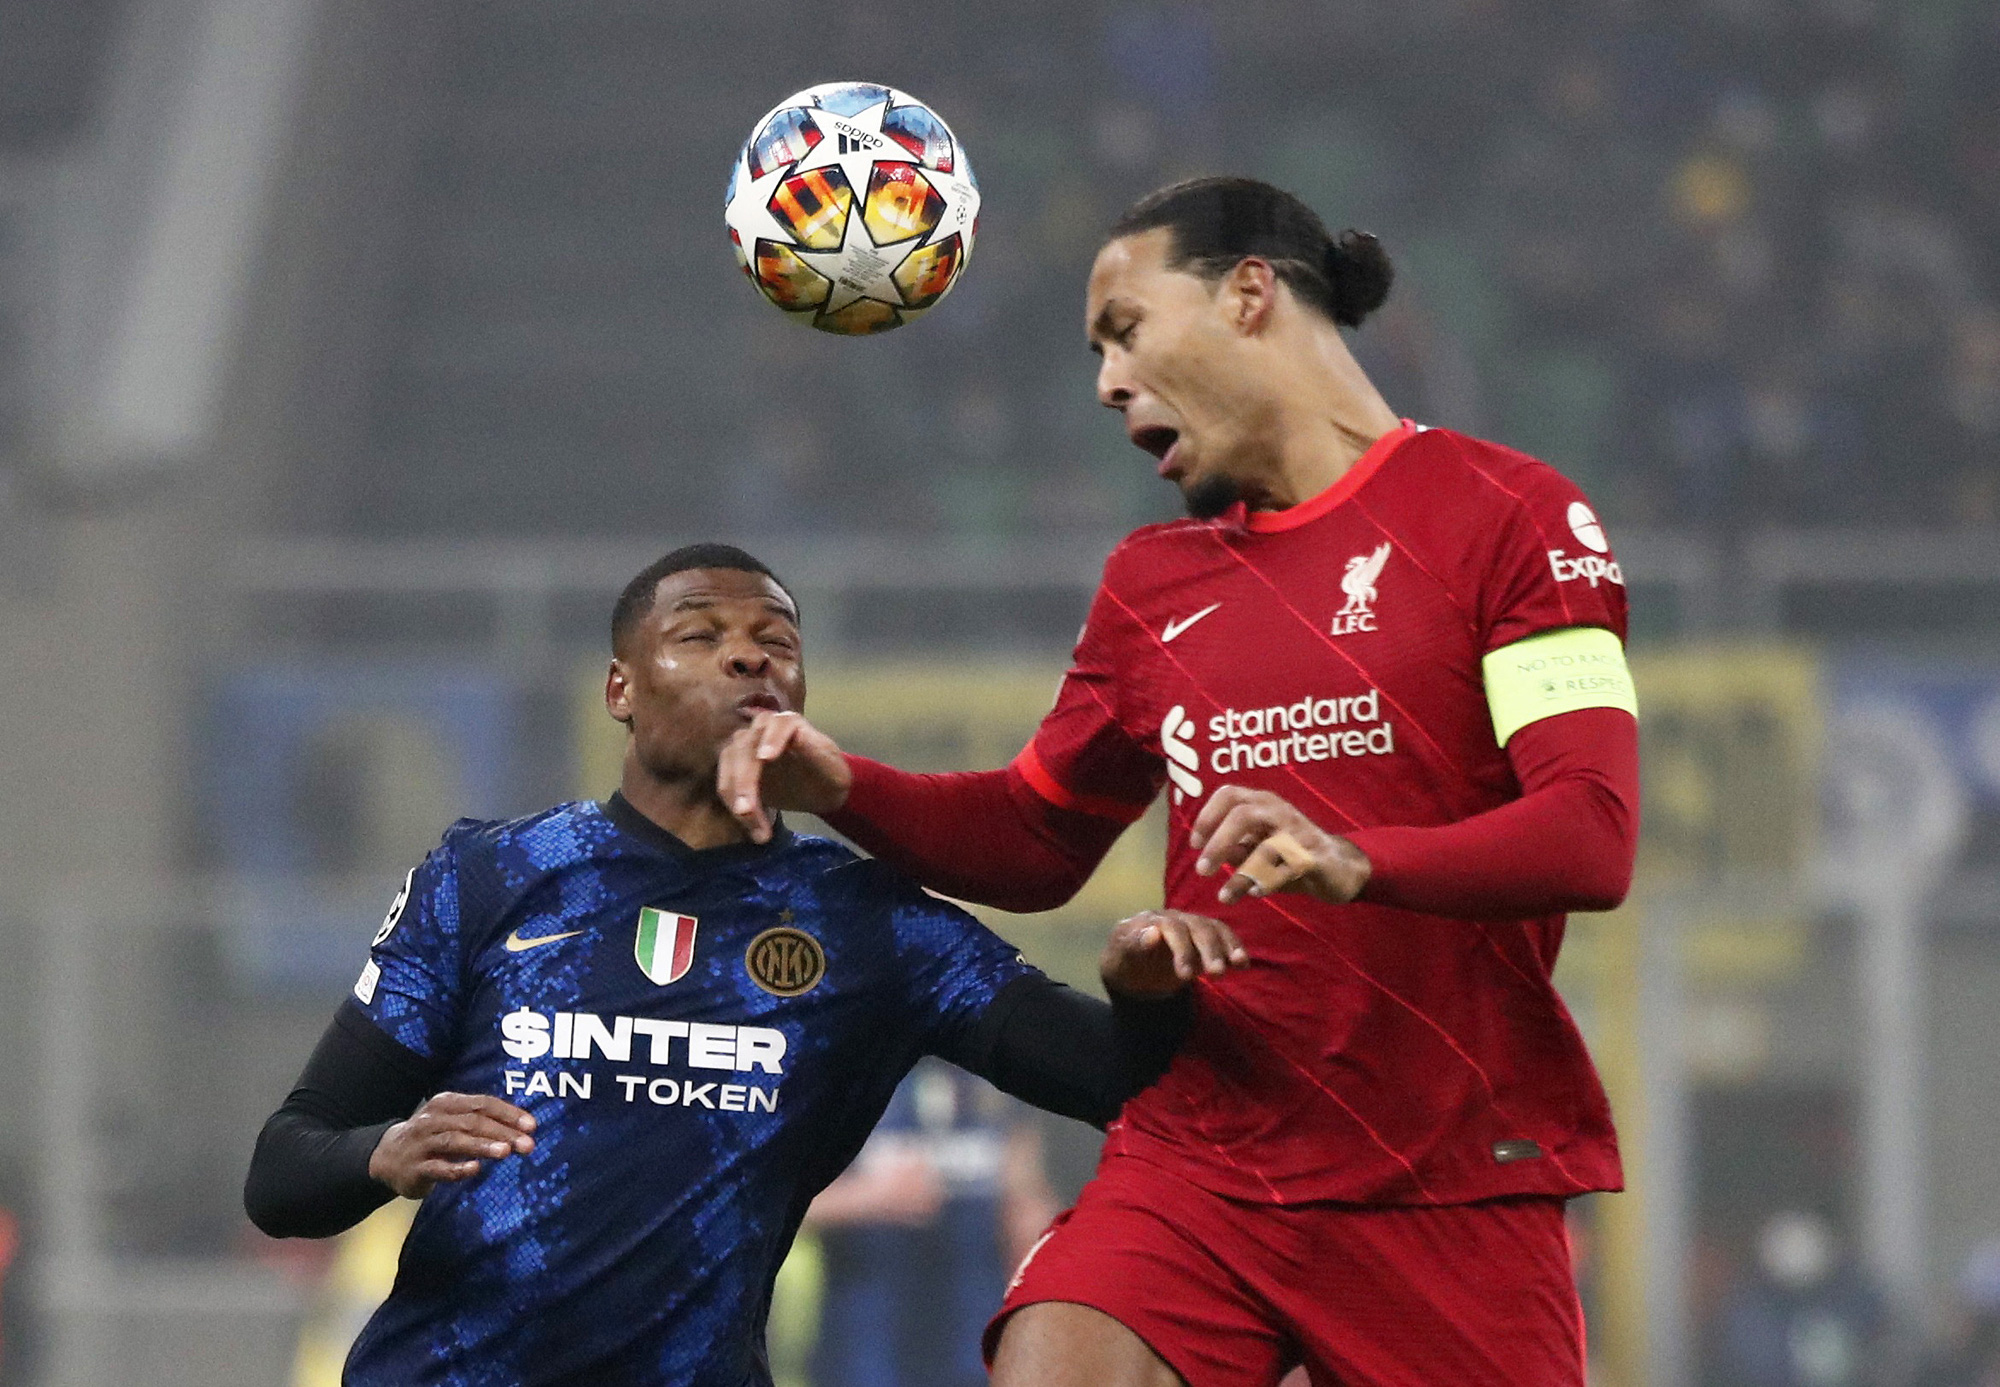 Tám phút bùng nổ, Liverpool đánh bại chủ nhà Inter Milan tại Giuseppe Meazza - Ảnh 1.